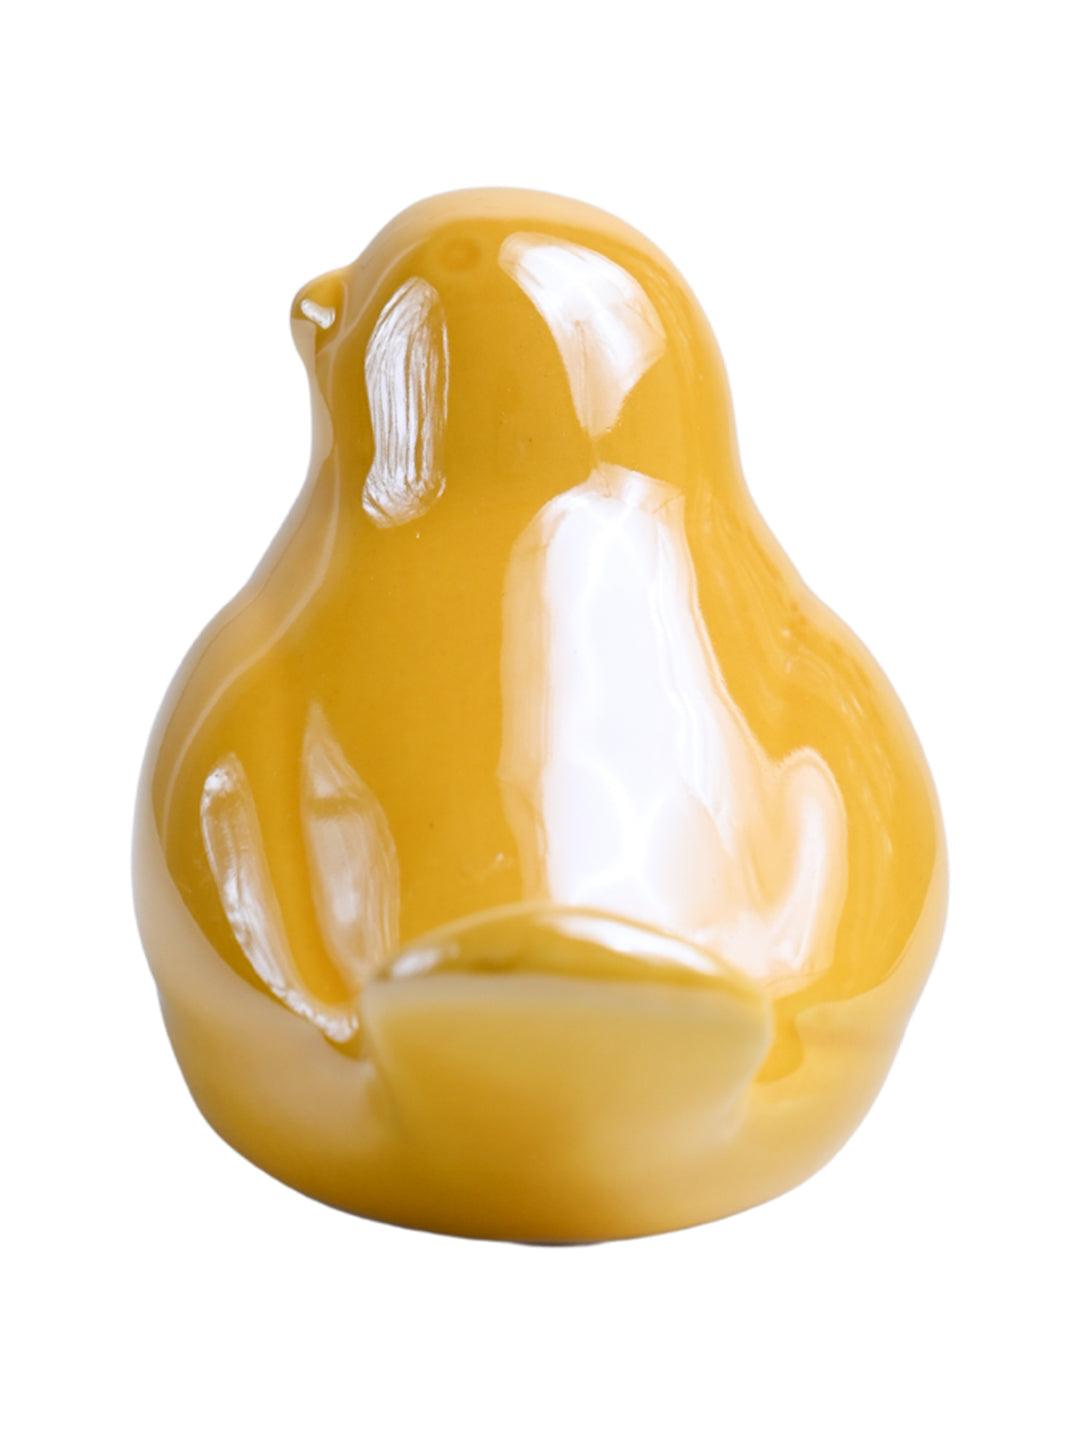 VON CASA Ceramic Decorative Bird - Yellow, Set Of 2 - MARKET99